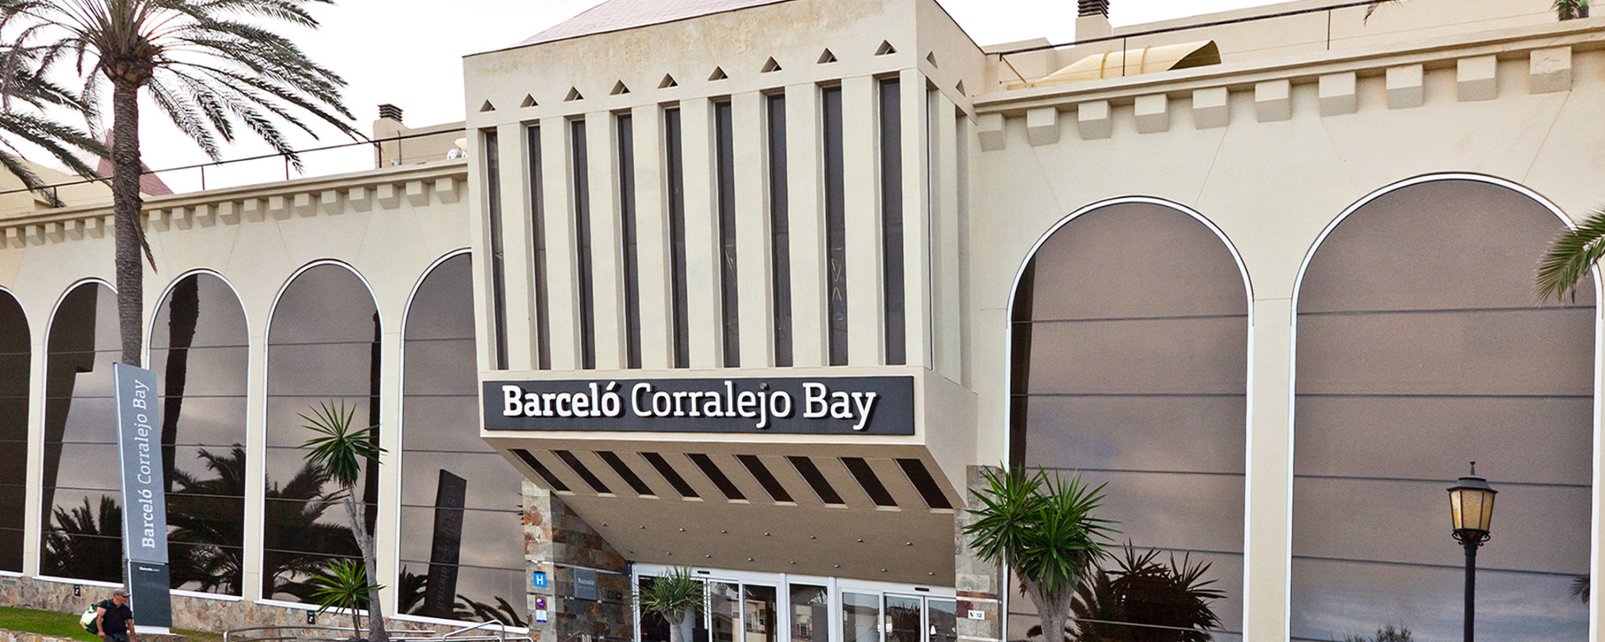 Hotel Barcelo Corralejo Bay